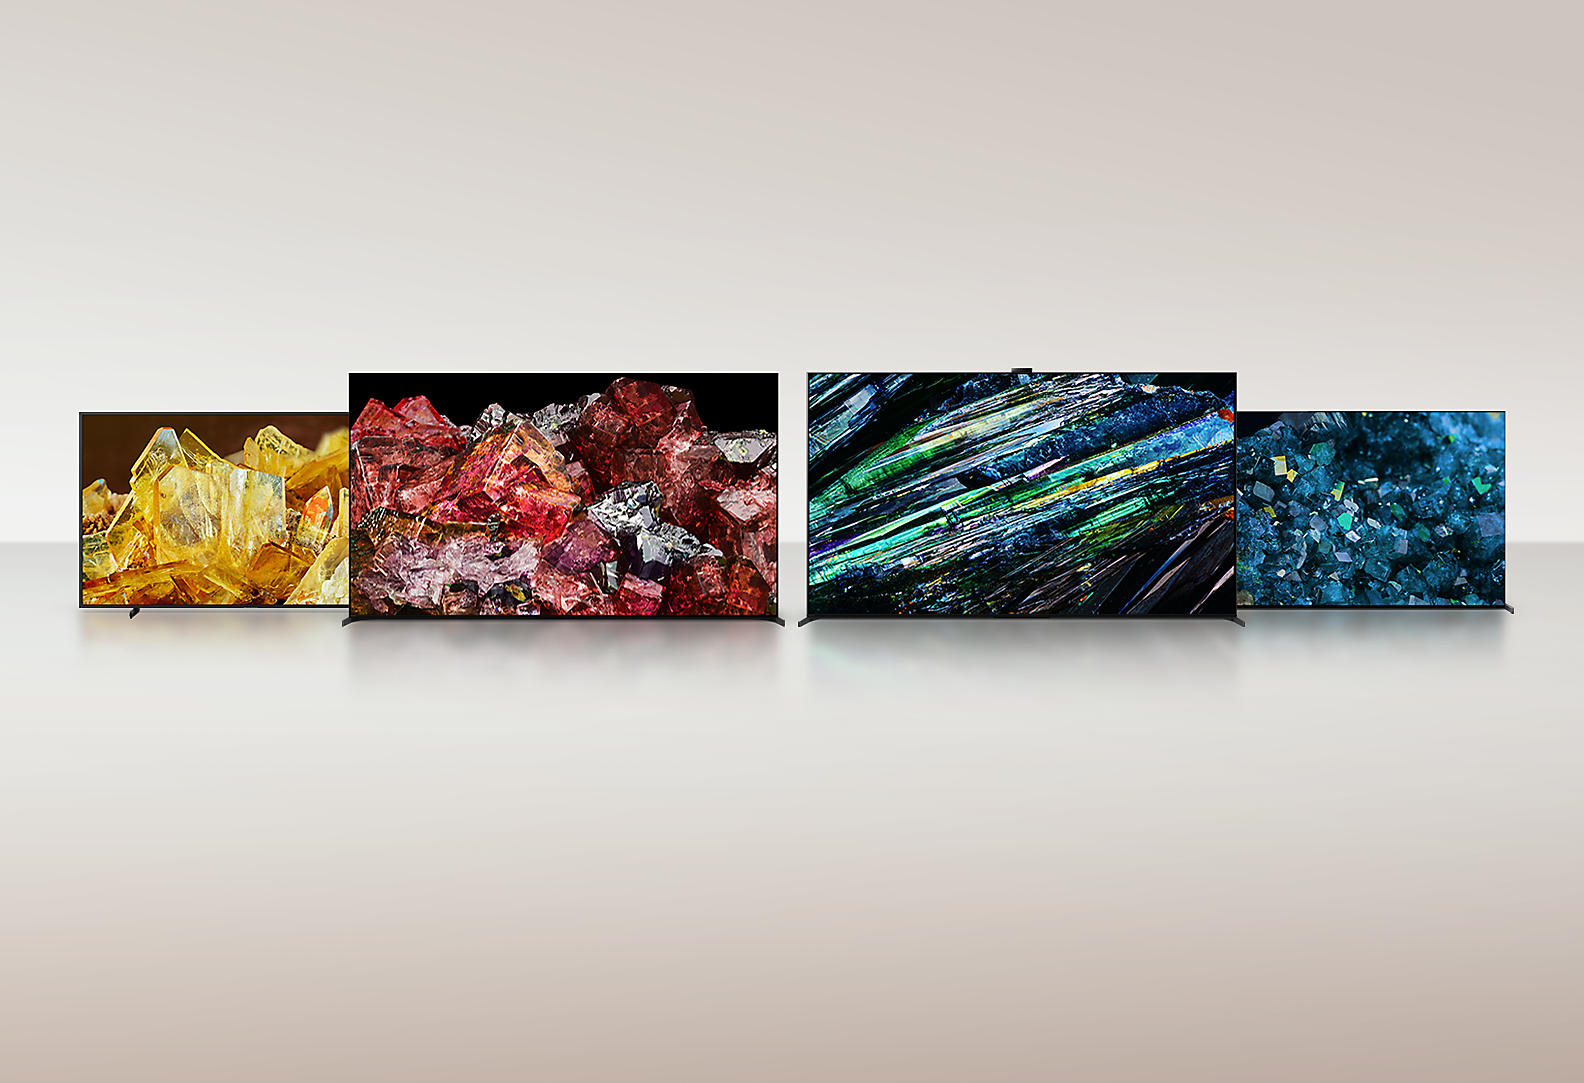 Четири телевизора BRAVIA XR, показващи изображения на цял екран на различни видове кристали с невероятни детайли и цветове